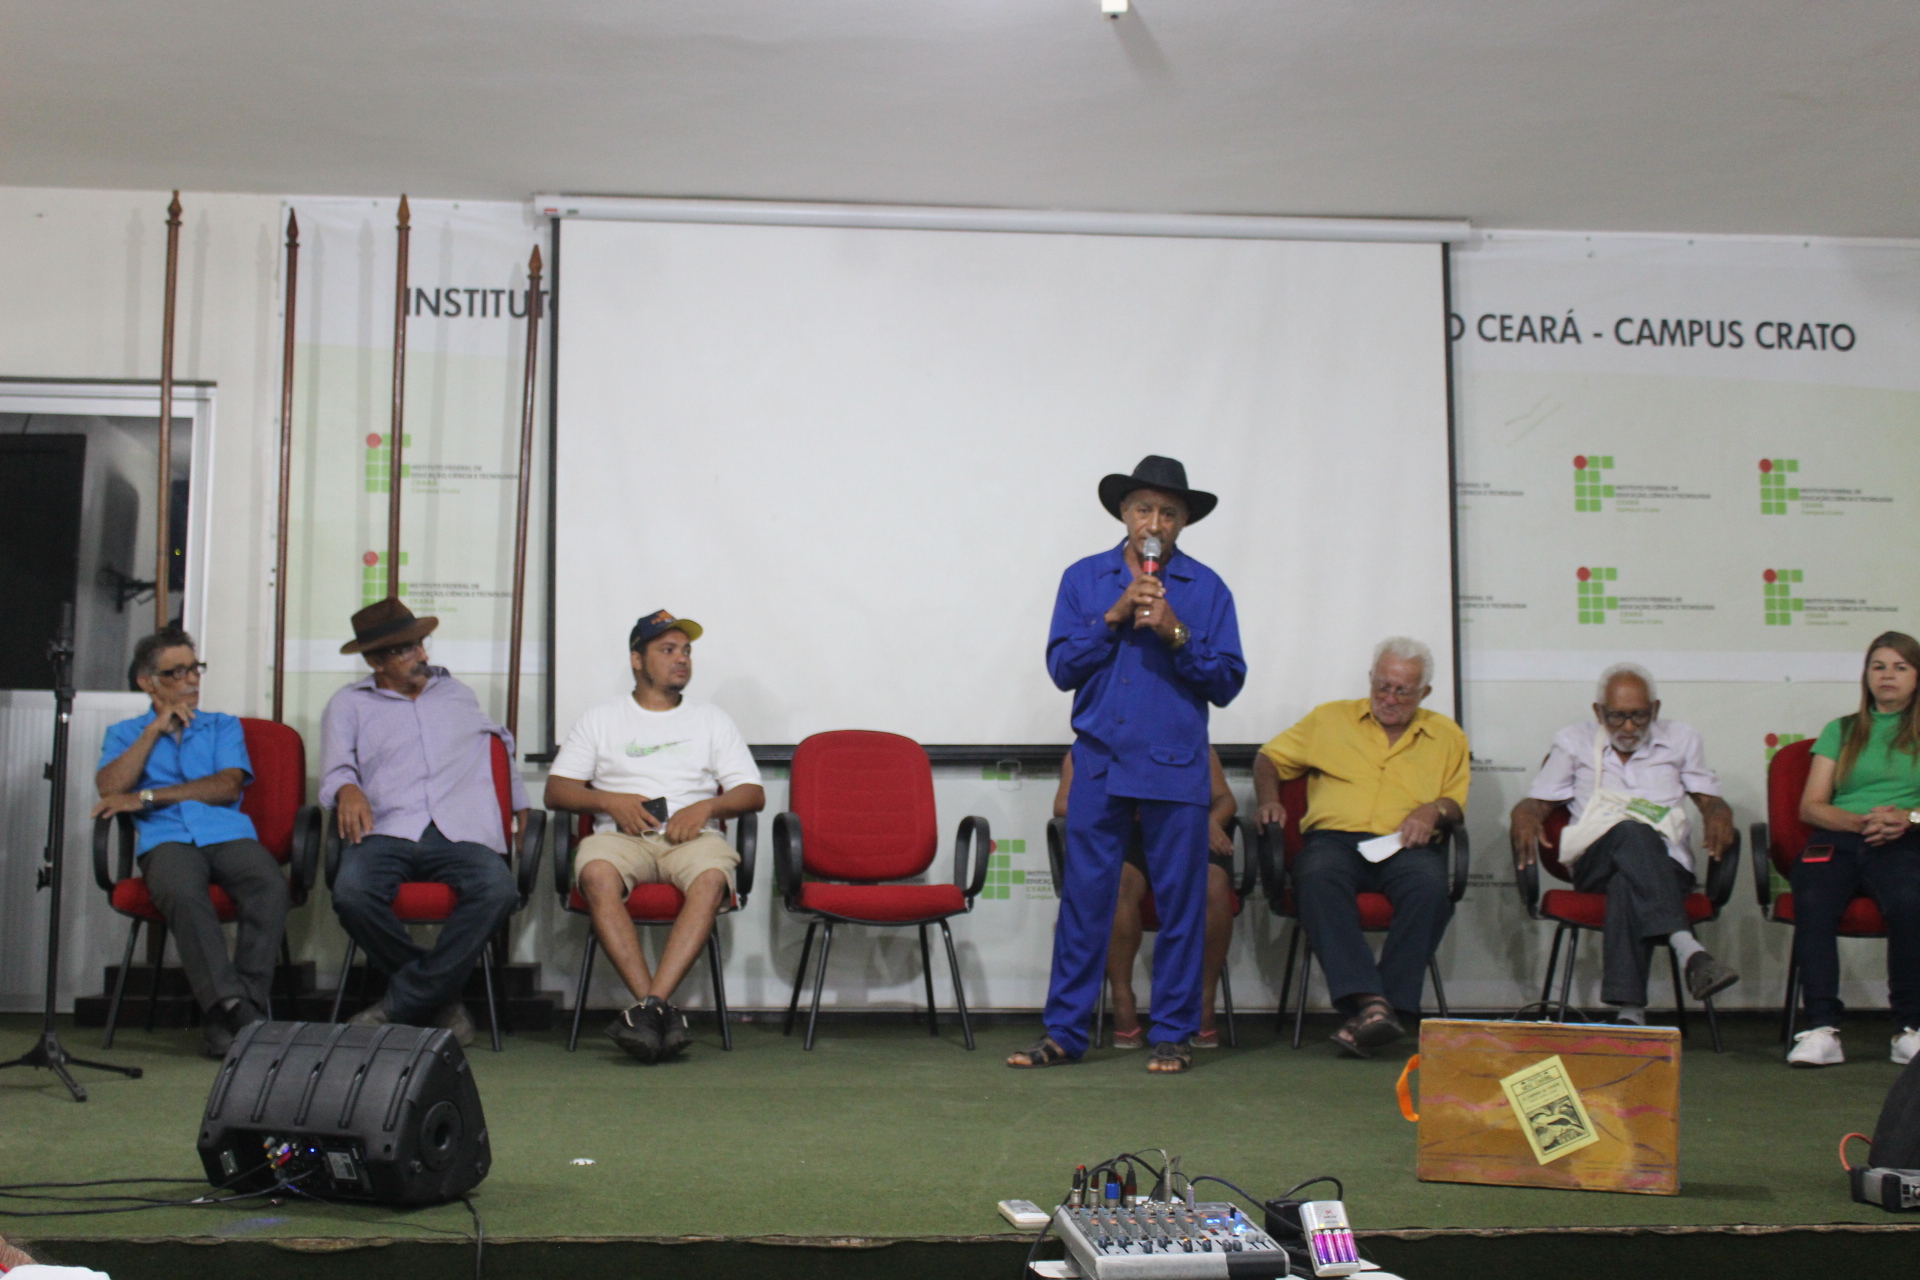 O evento foi realizado pelo IFCE campus de Crato, Sindicato de Trabalhadores Rurais do Crato e prefeitura municipal de Crato, através da Secretaria de Desenvolvimento Agrário e Recursos Hídricos.